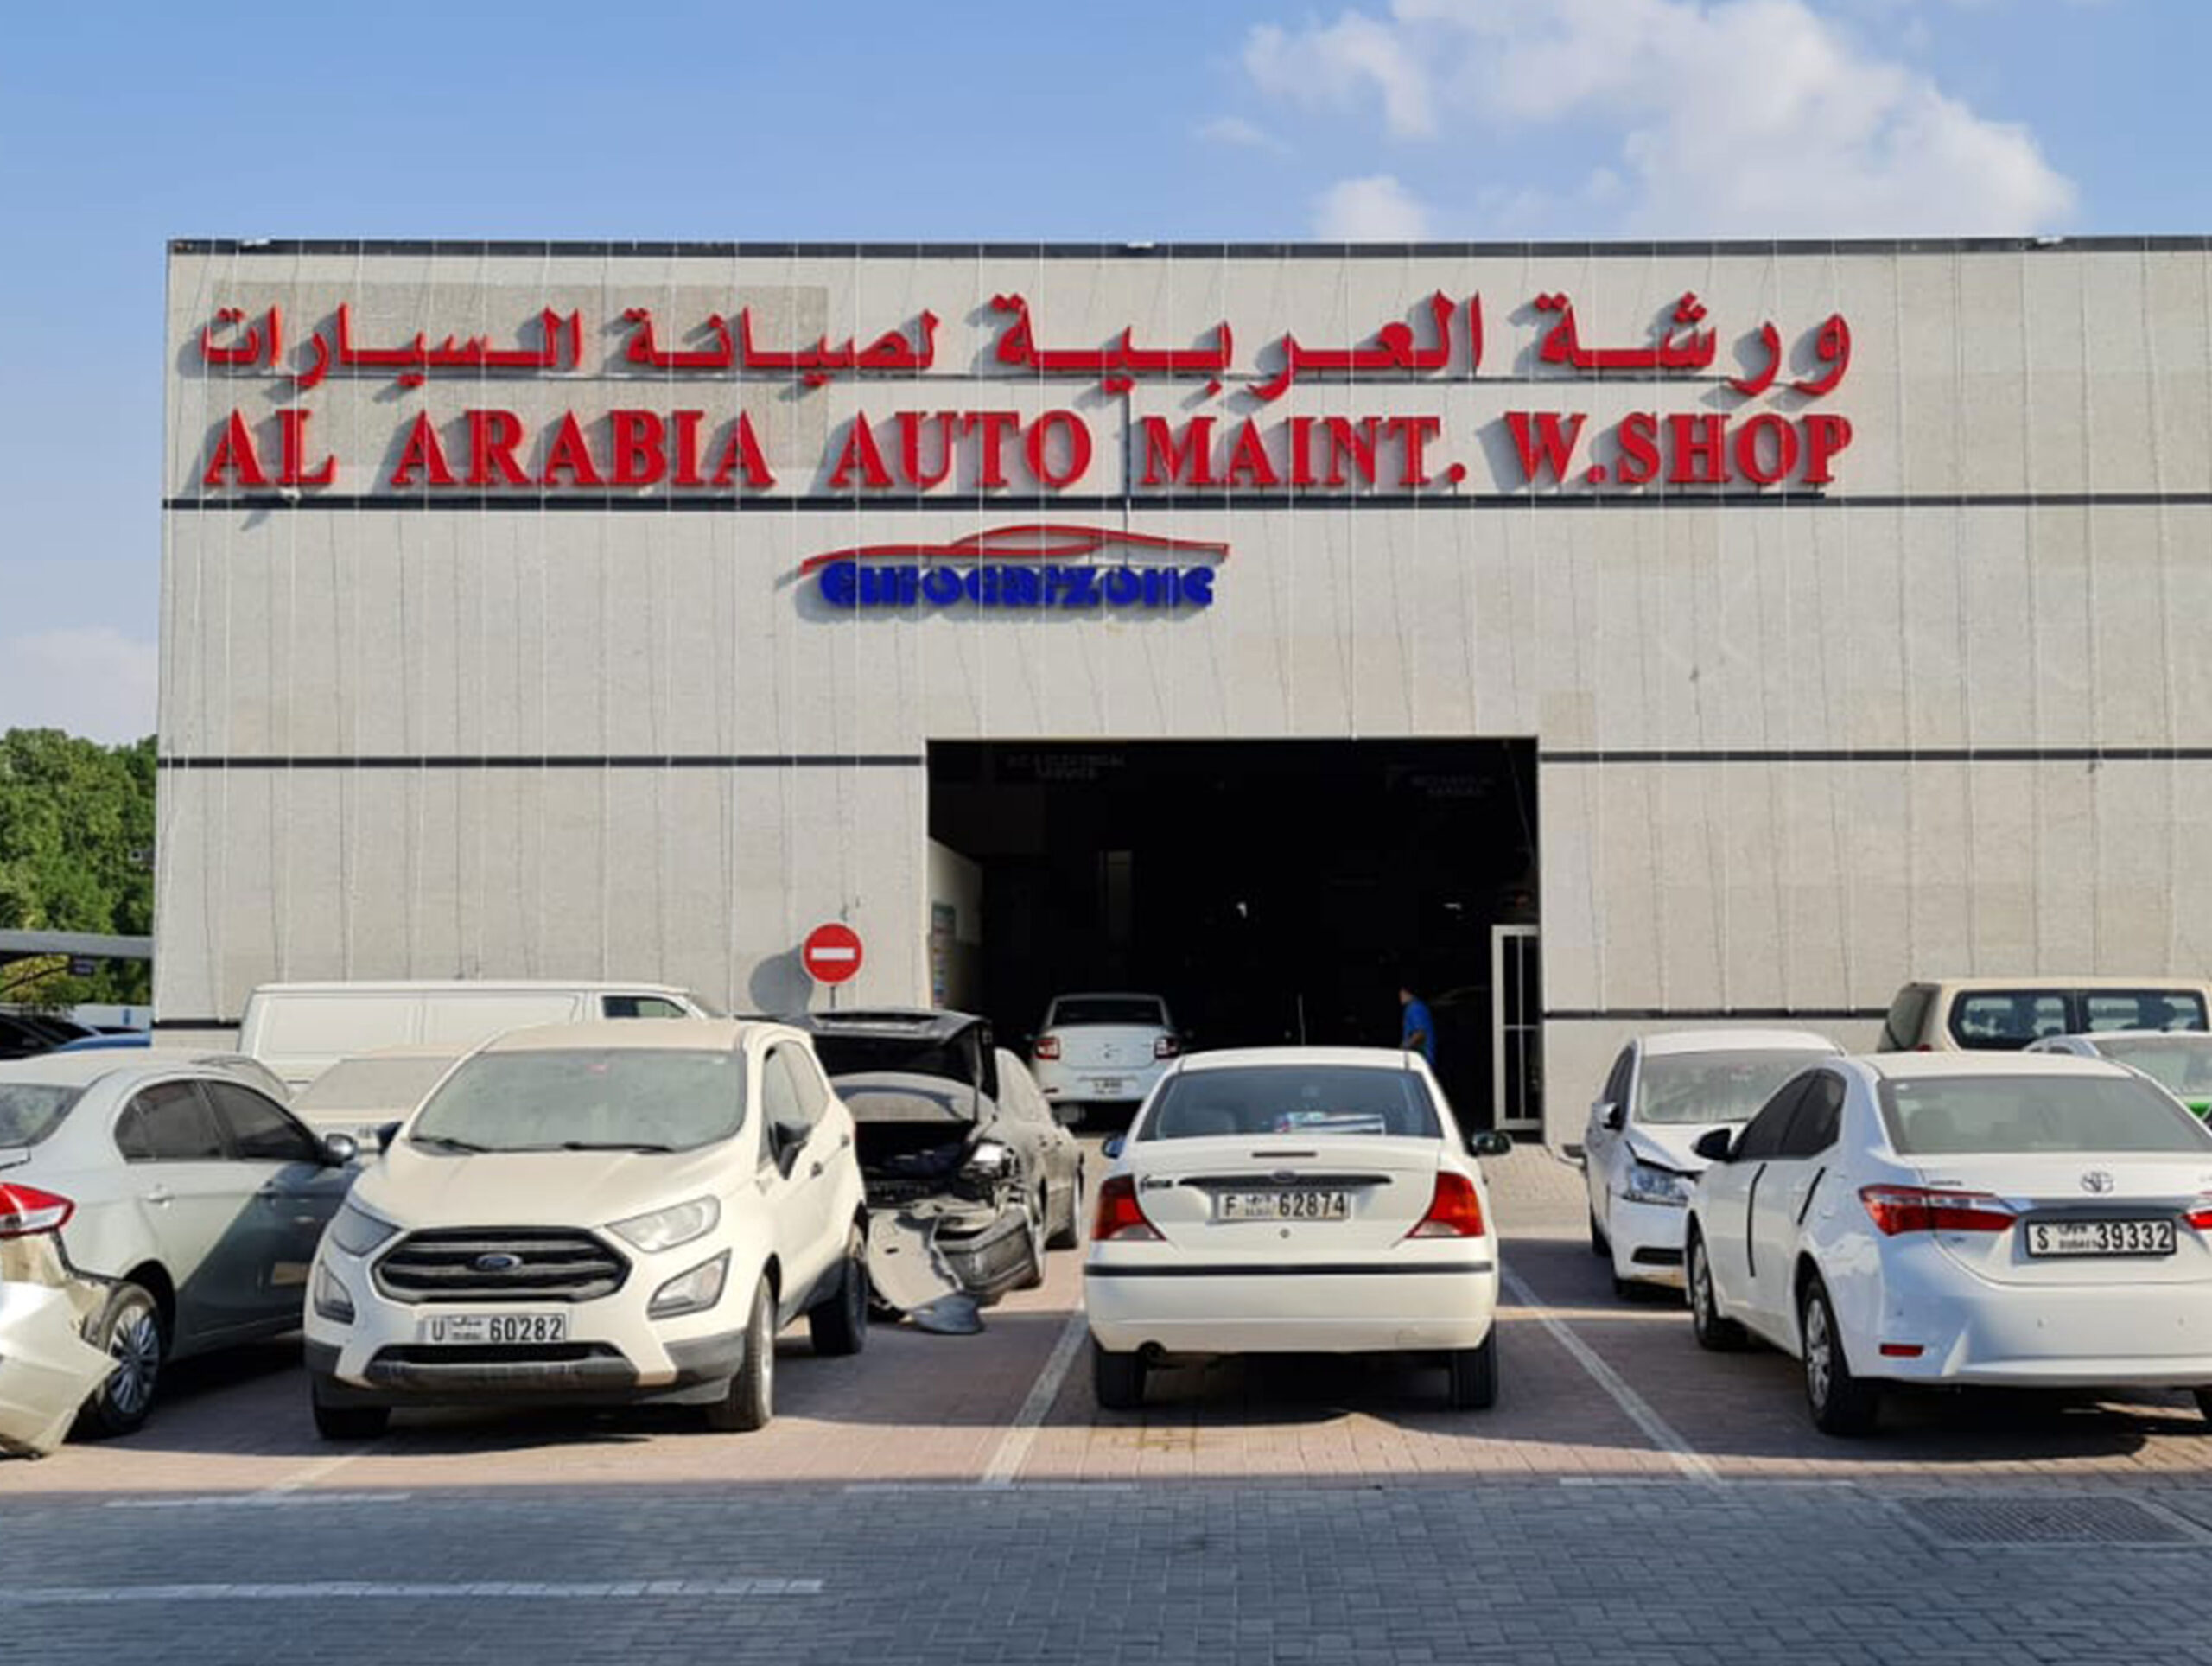 Signage manufacturer in Sharjah